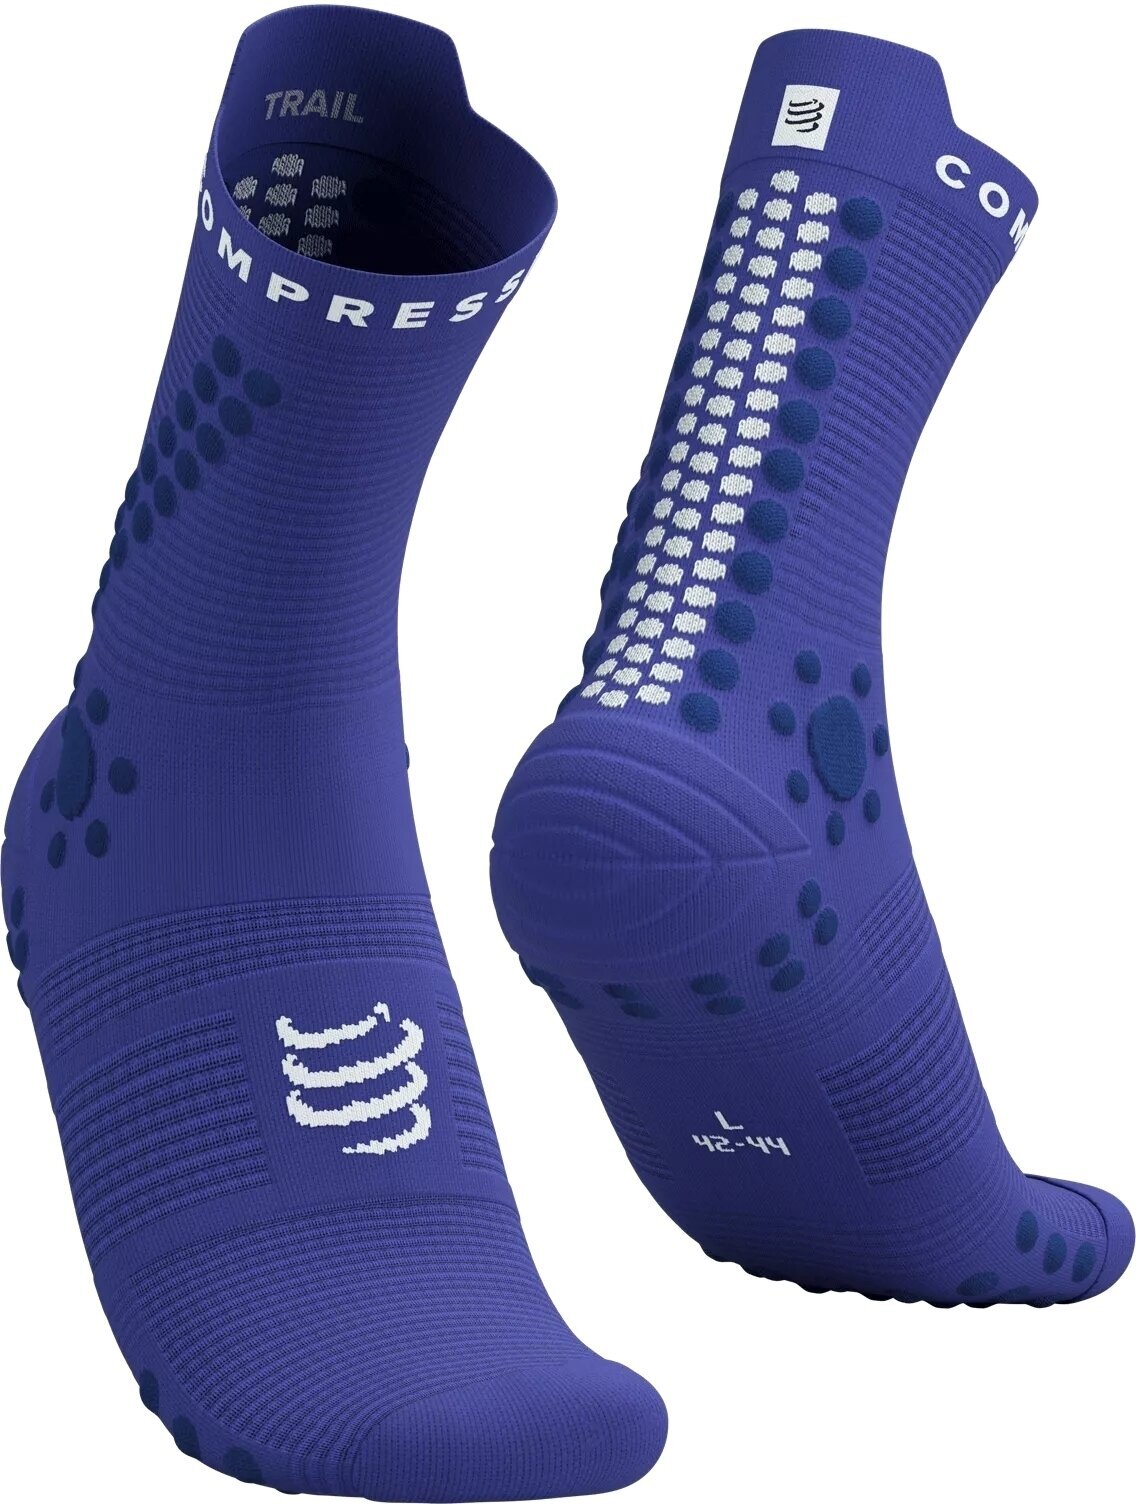 Bežecké ponožky
 Compressport Pro Racing Socks V4.0 Trail Dazzling Blue/Dress Blues/White T3 Bežecké ponožky